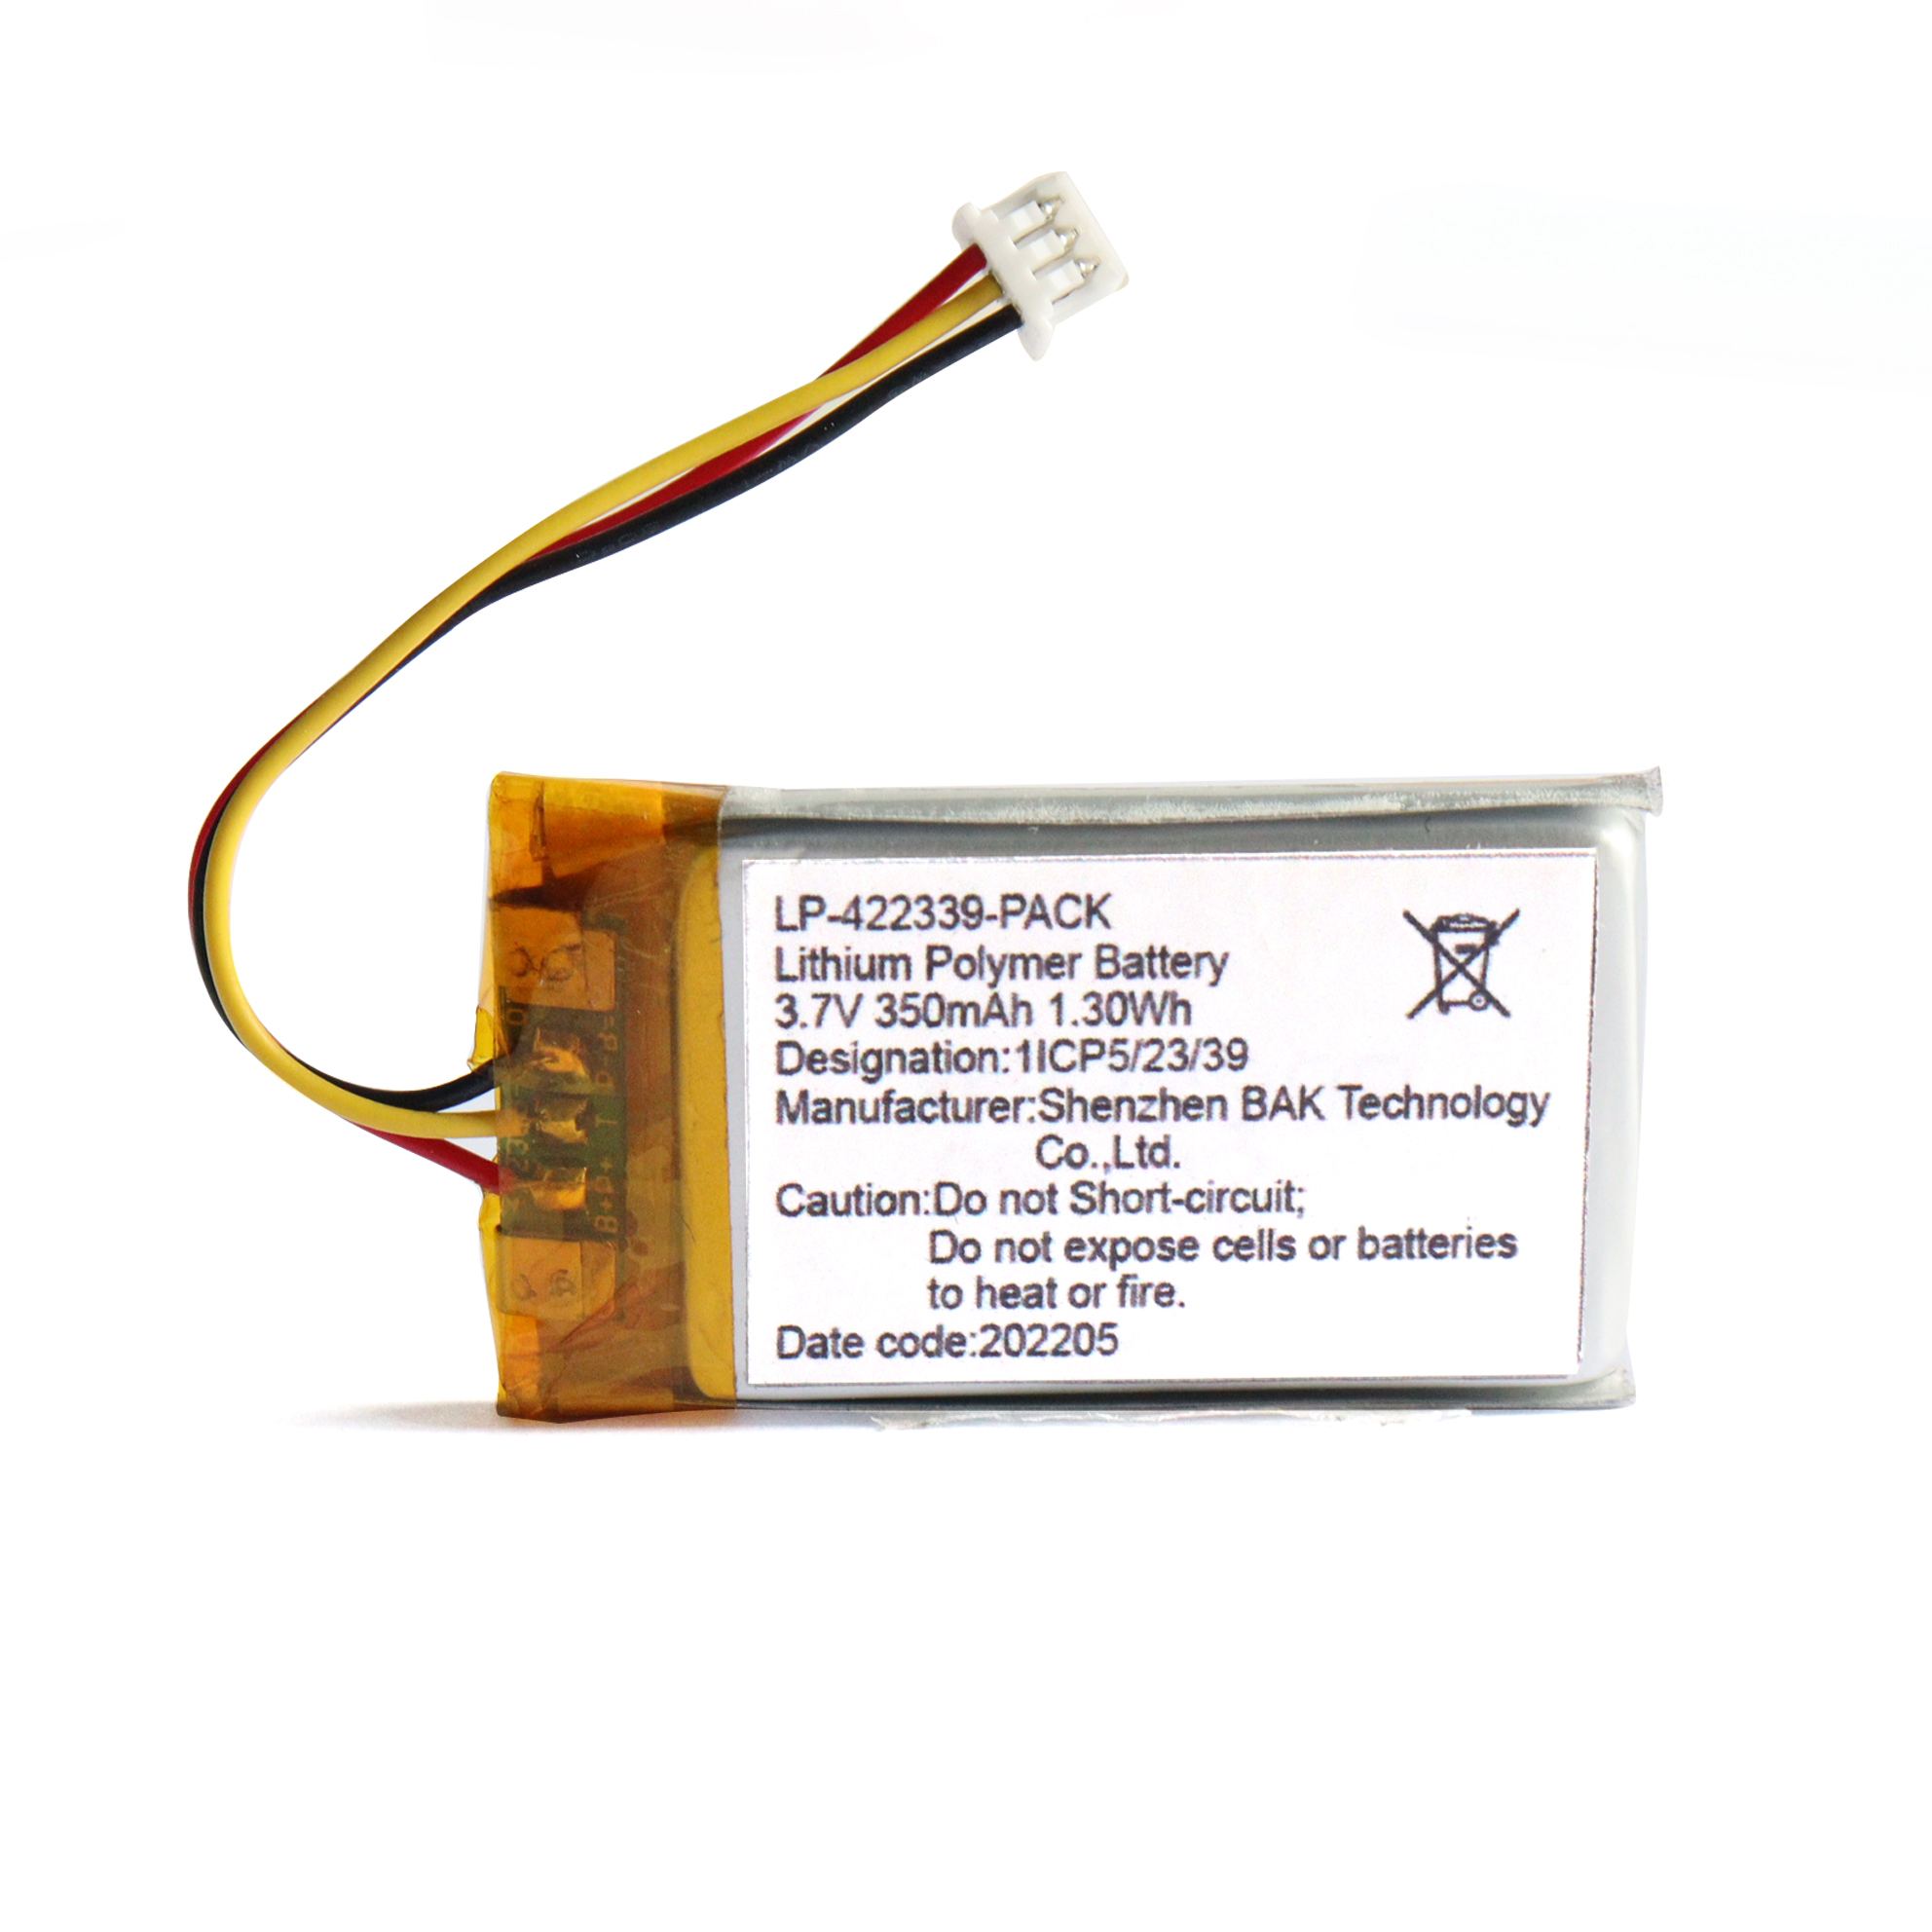 Bateria de polímero de lítio 3.7V350mAh para dispositivo Bluetooth